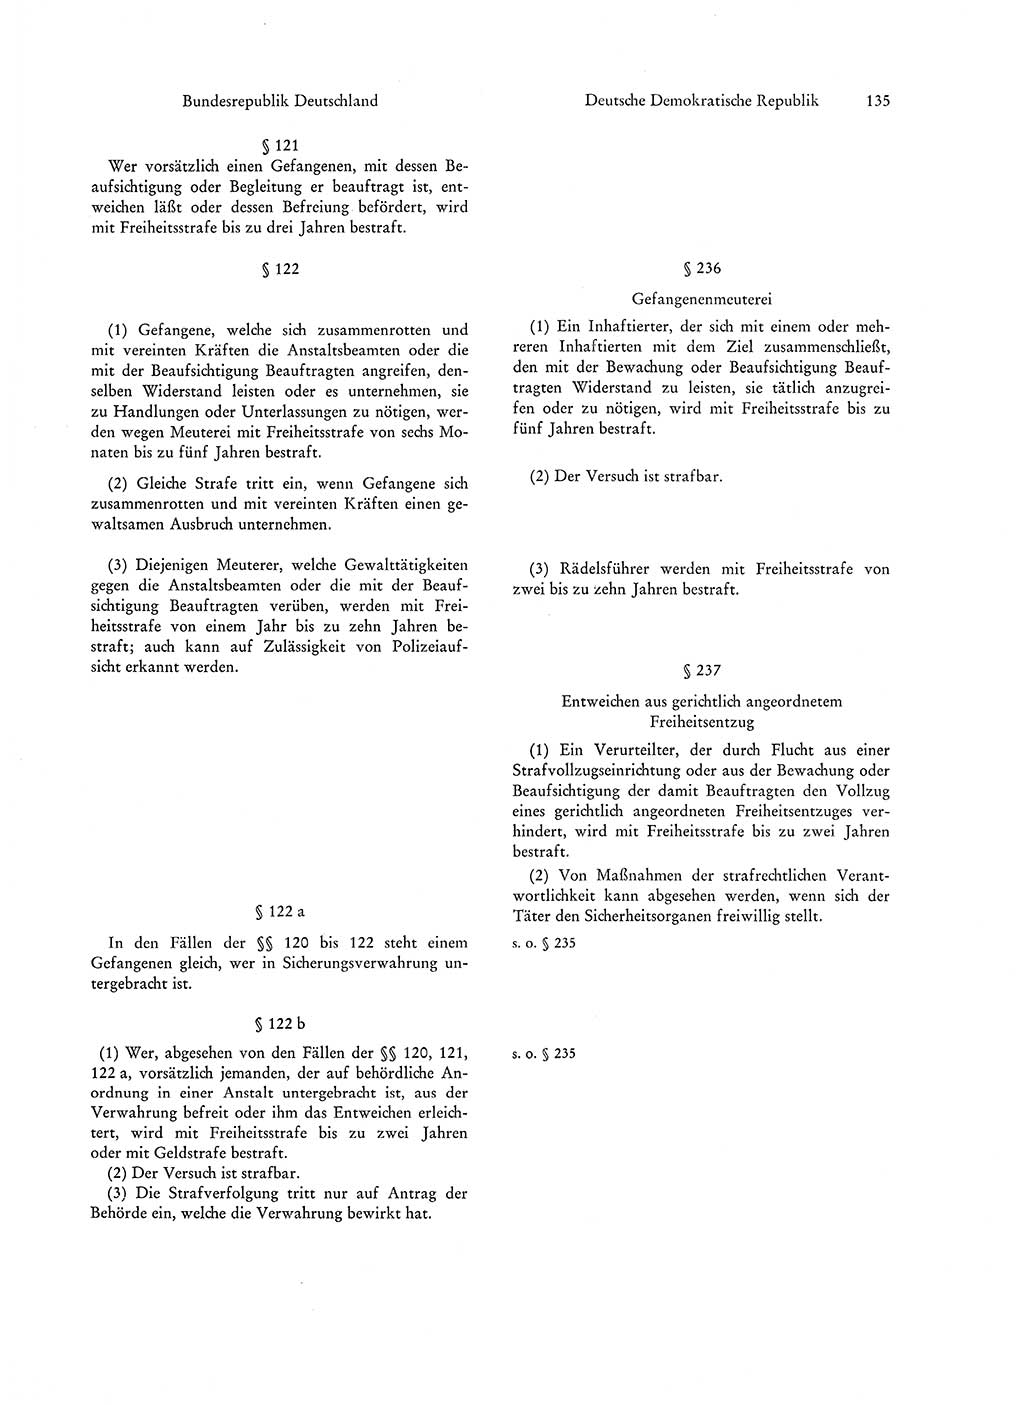 Strafgesetzgebung in Deutschland [Bundesrepublik Deutschland (BRD) und Deutsche Demokratische Republik (DDR)] 1972, Seite 135 (Str.-Ges. Dtl. StGB BRD DDR 1972, S. 135)